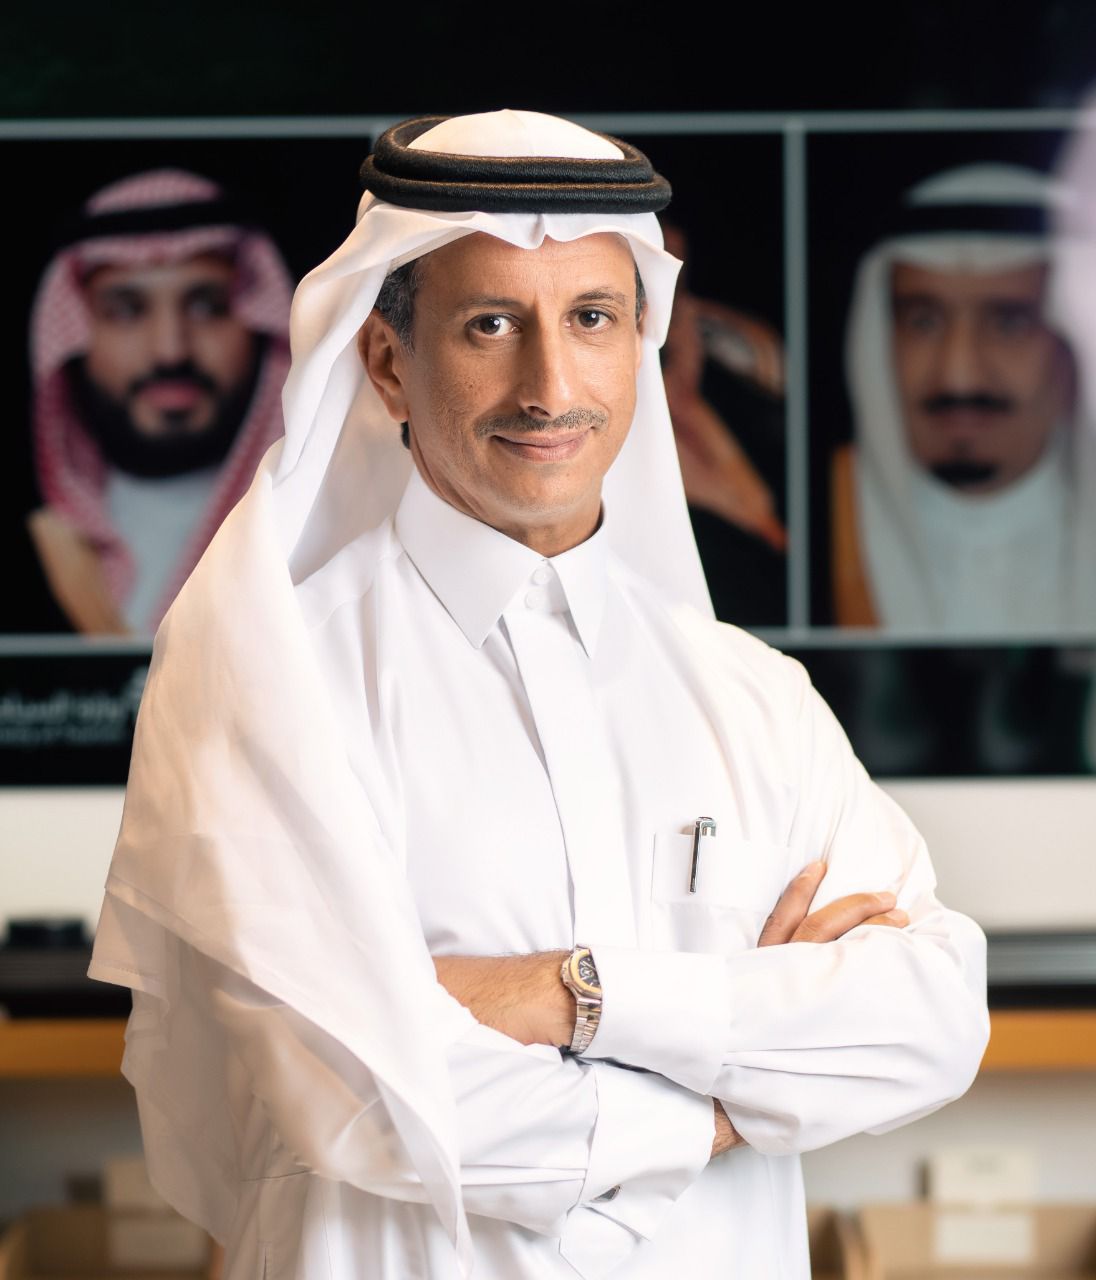 الرياض تستضيف المجلس العالمي للسياحة والسفر بحضور القادة وكبار المسؤولين في العالم